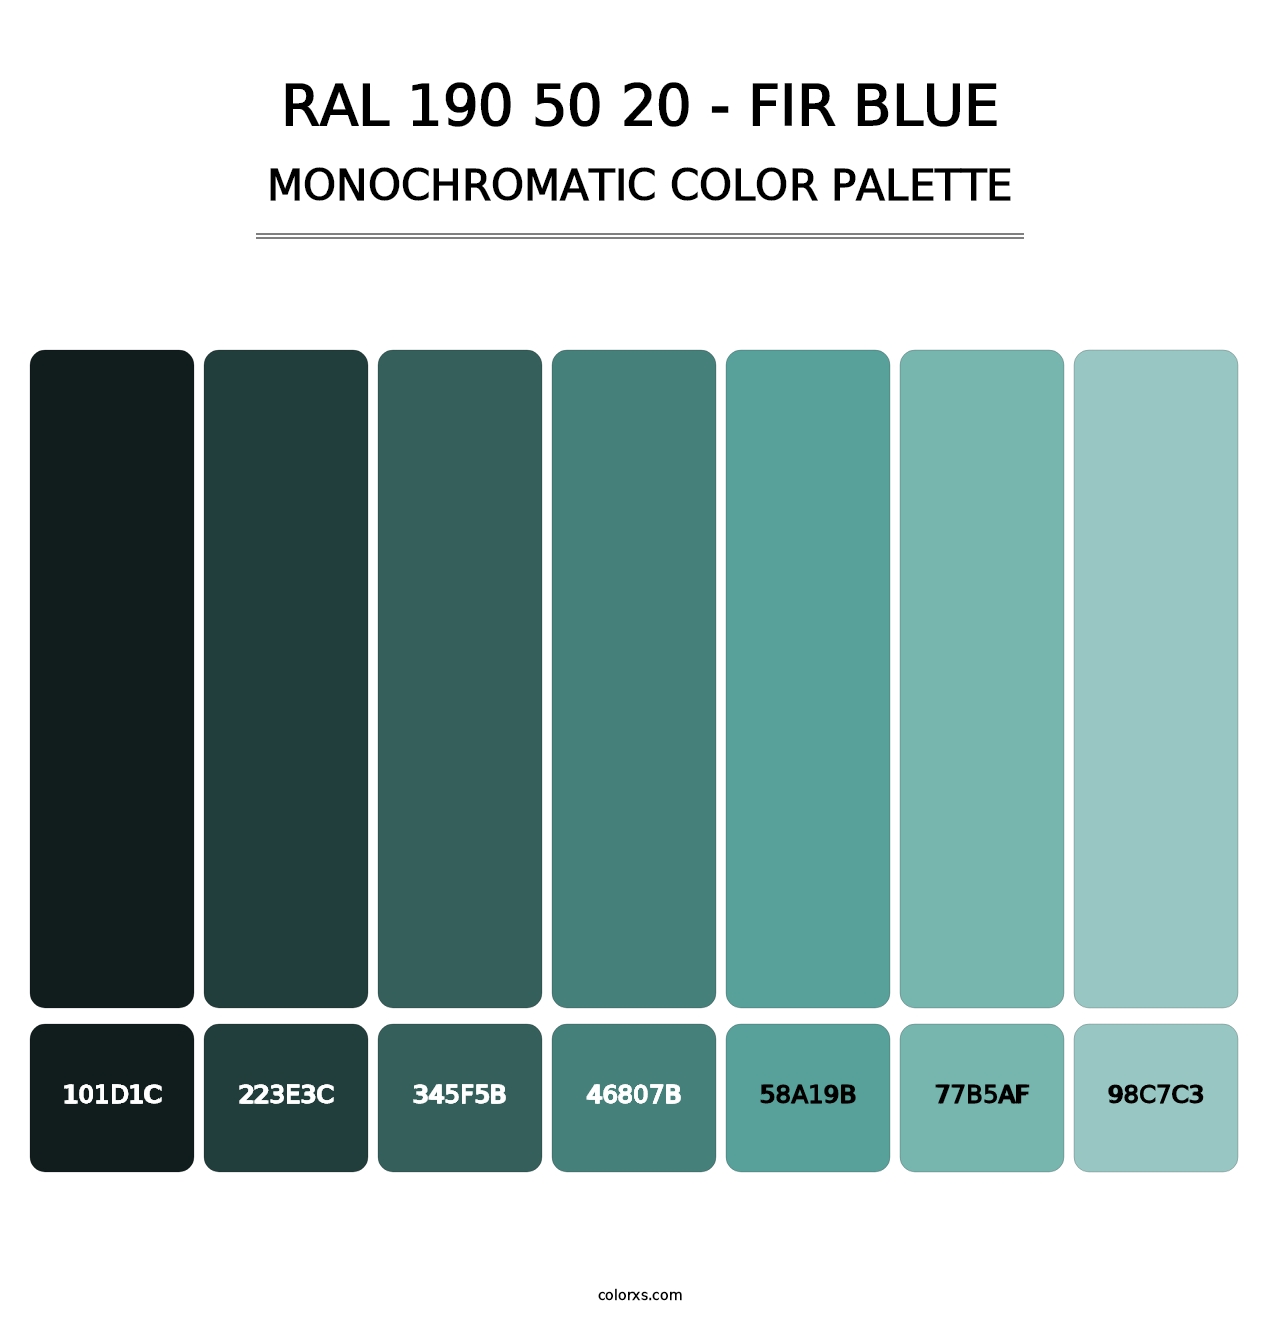 RAL 190 50 20 - Fir Blue - Monochromatic Color Palette